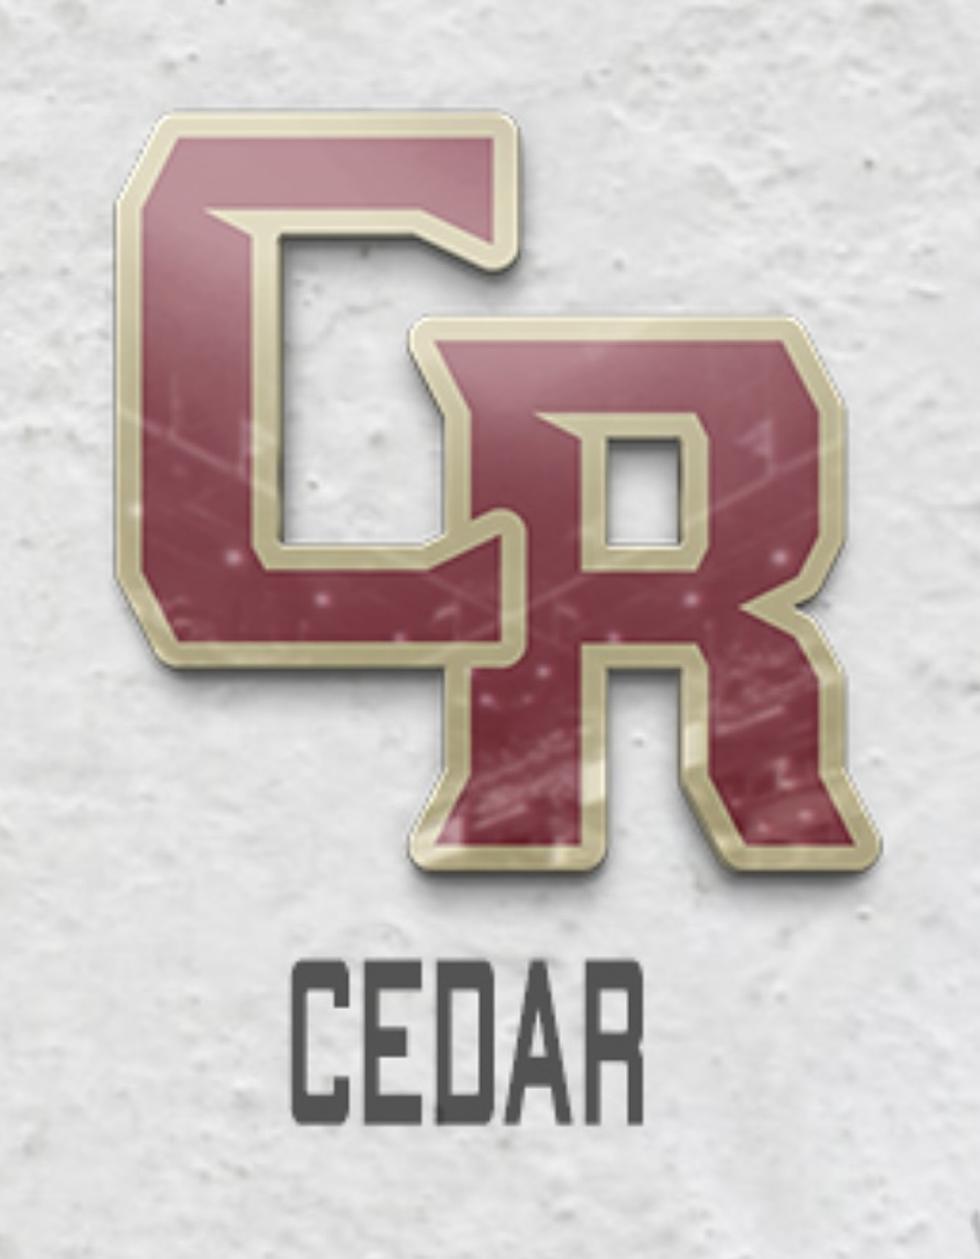 UTAH 4A HOOPS TOURNAMENT PREVIEW: CEDAR REDS